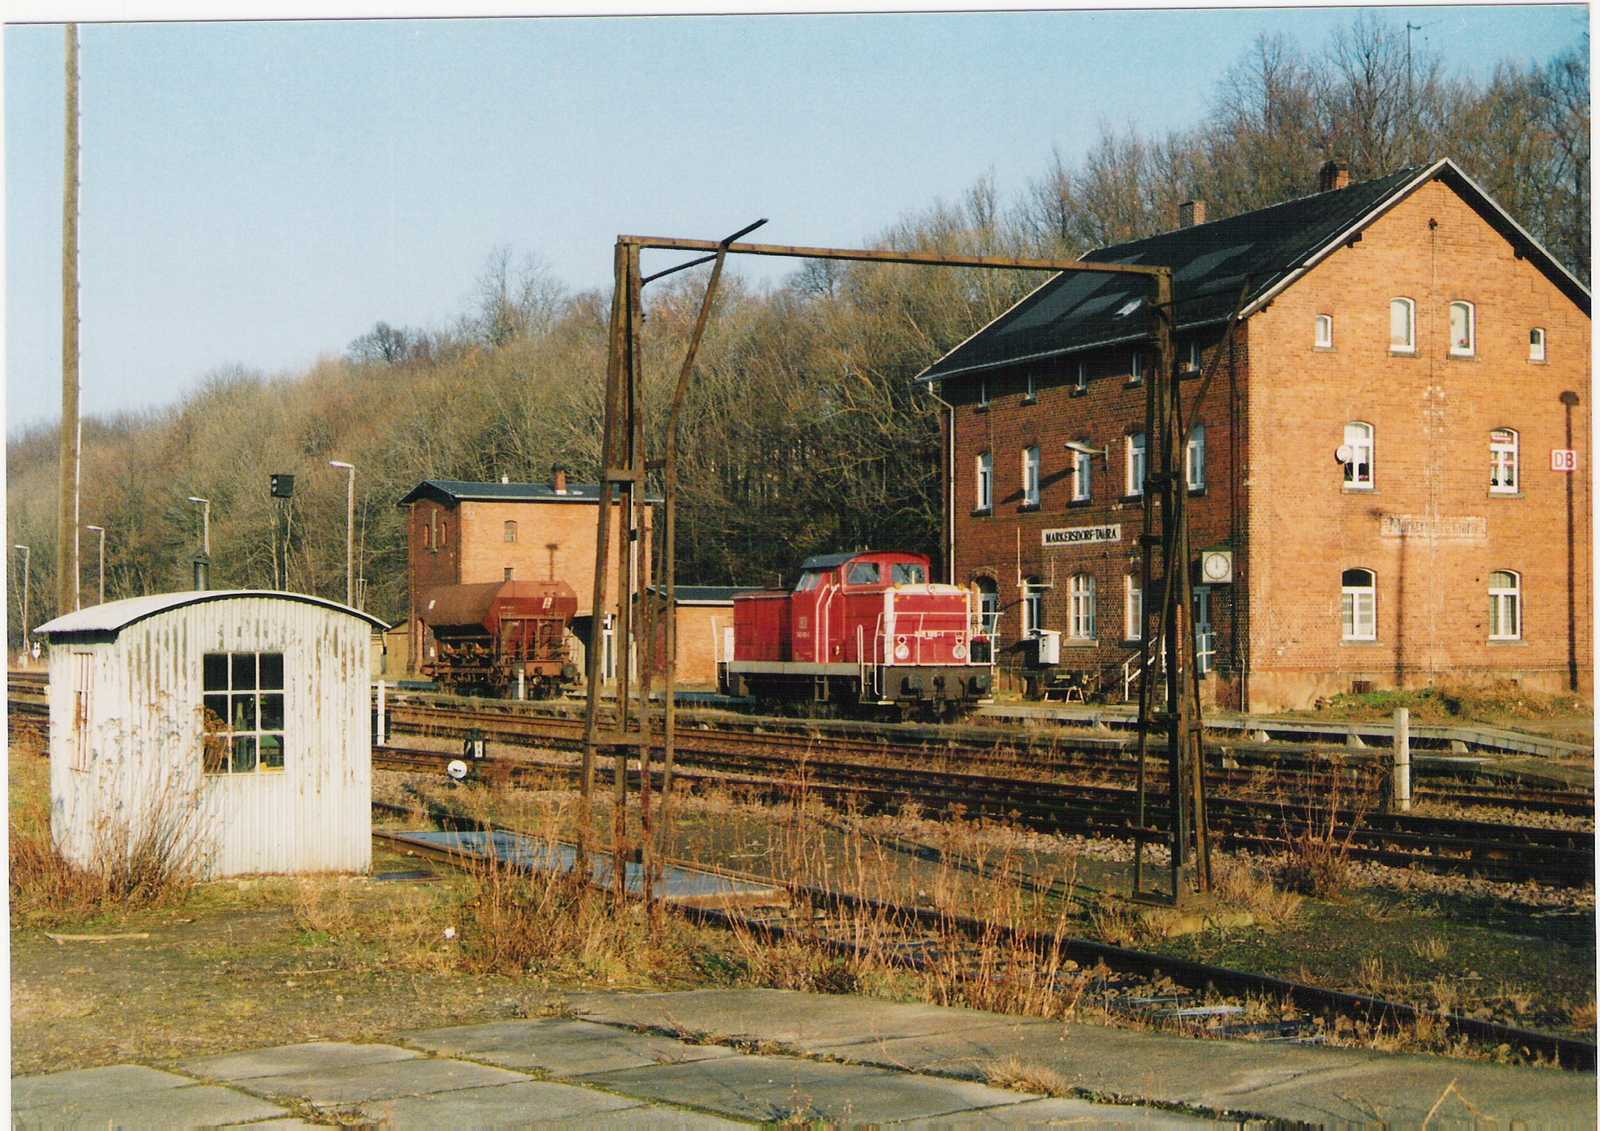 Am 30. Dezember 1998 holt 345105 einen Kohlewagen in Markersdorf-Taura ab, um als CB 66533 nach Chemnitz zu fahren.